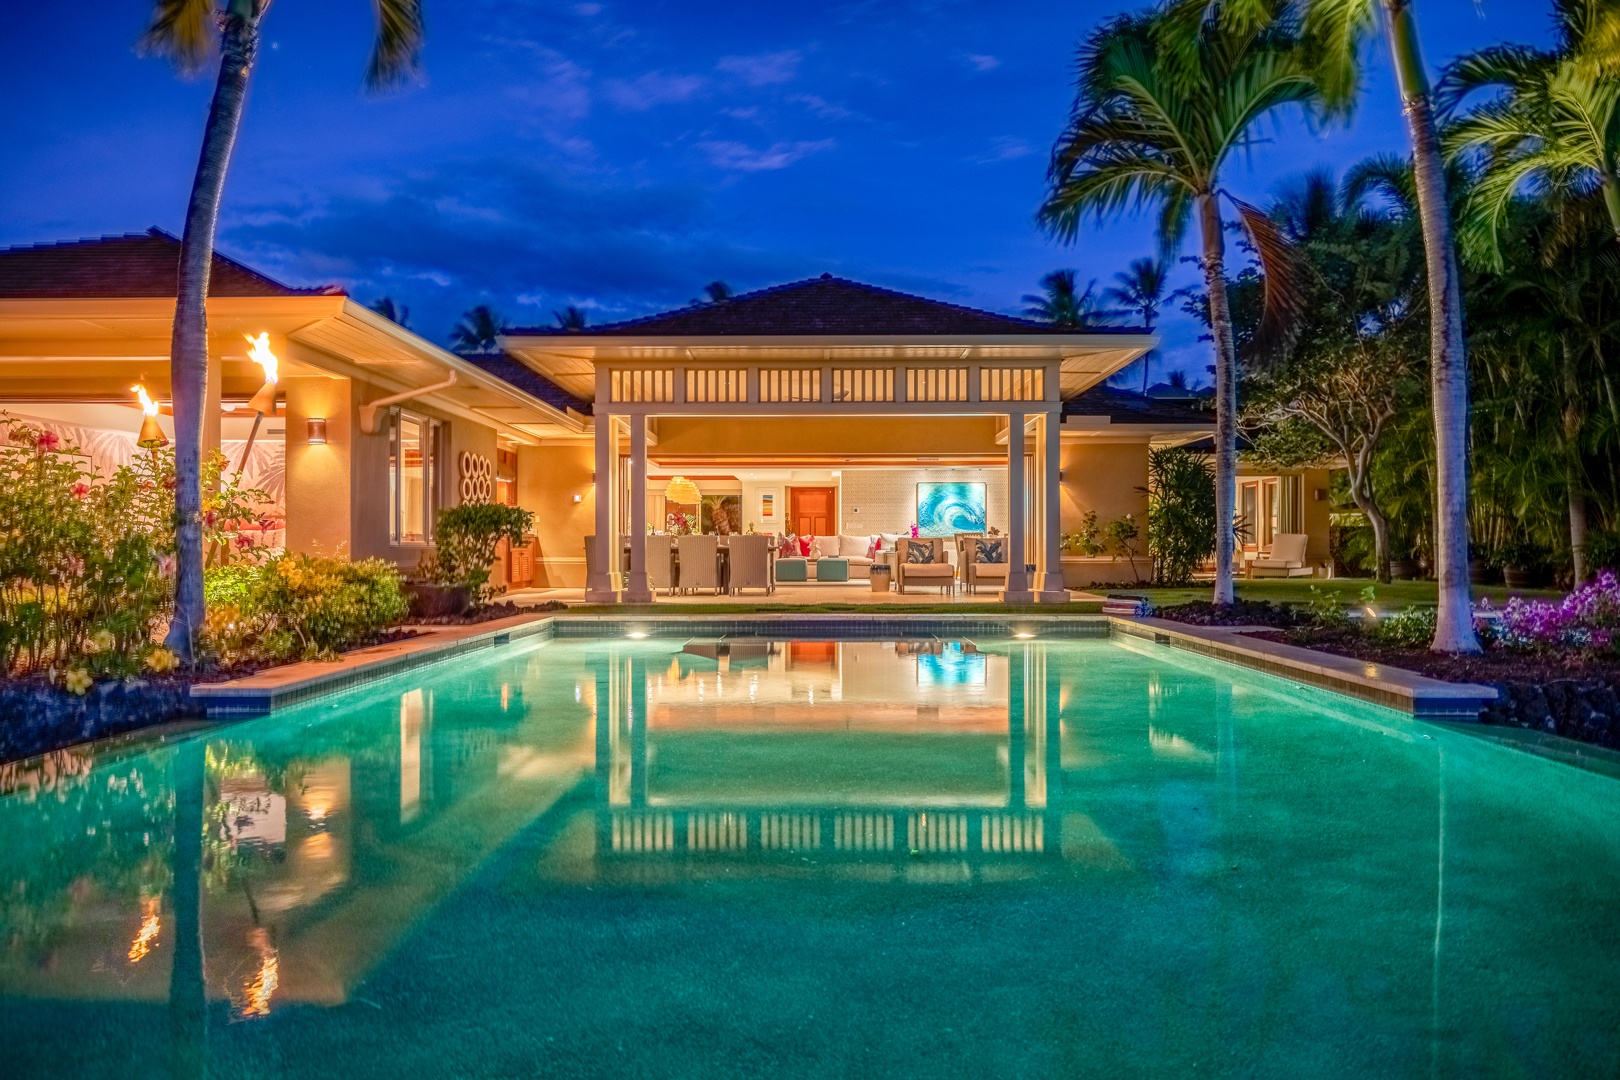 Kailua Kona Vacation Rentals, 4BD Hainoa Estate (122) at Four Seasons Resort at Hualalai - Opulence and tranquility - the ideal vacation.